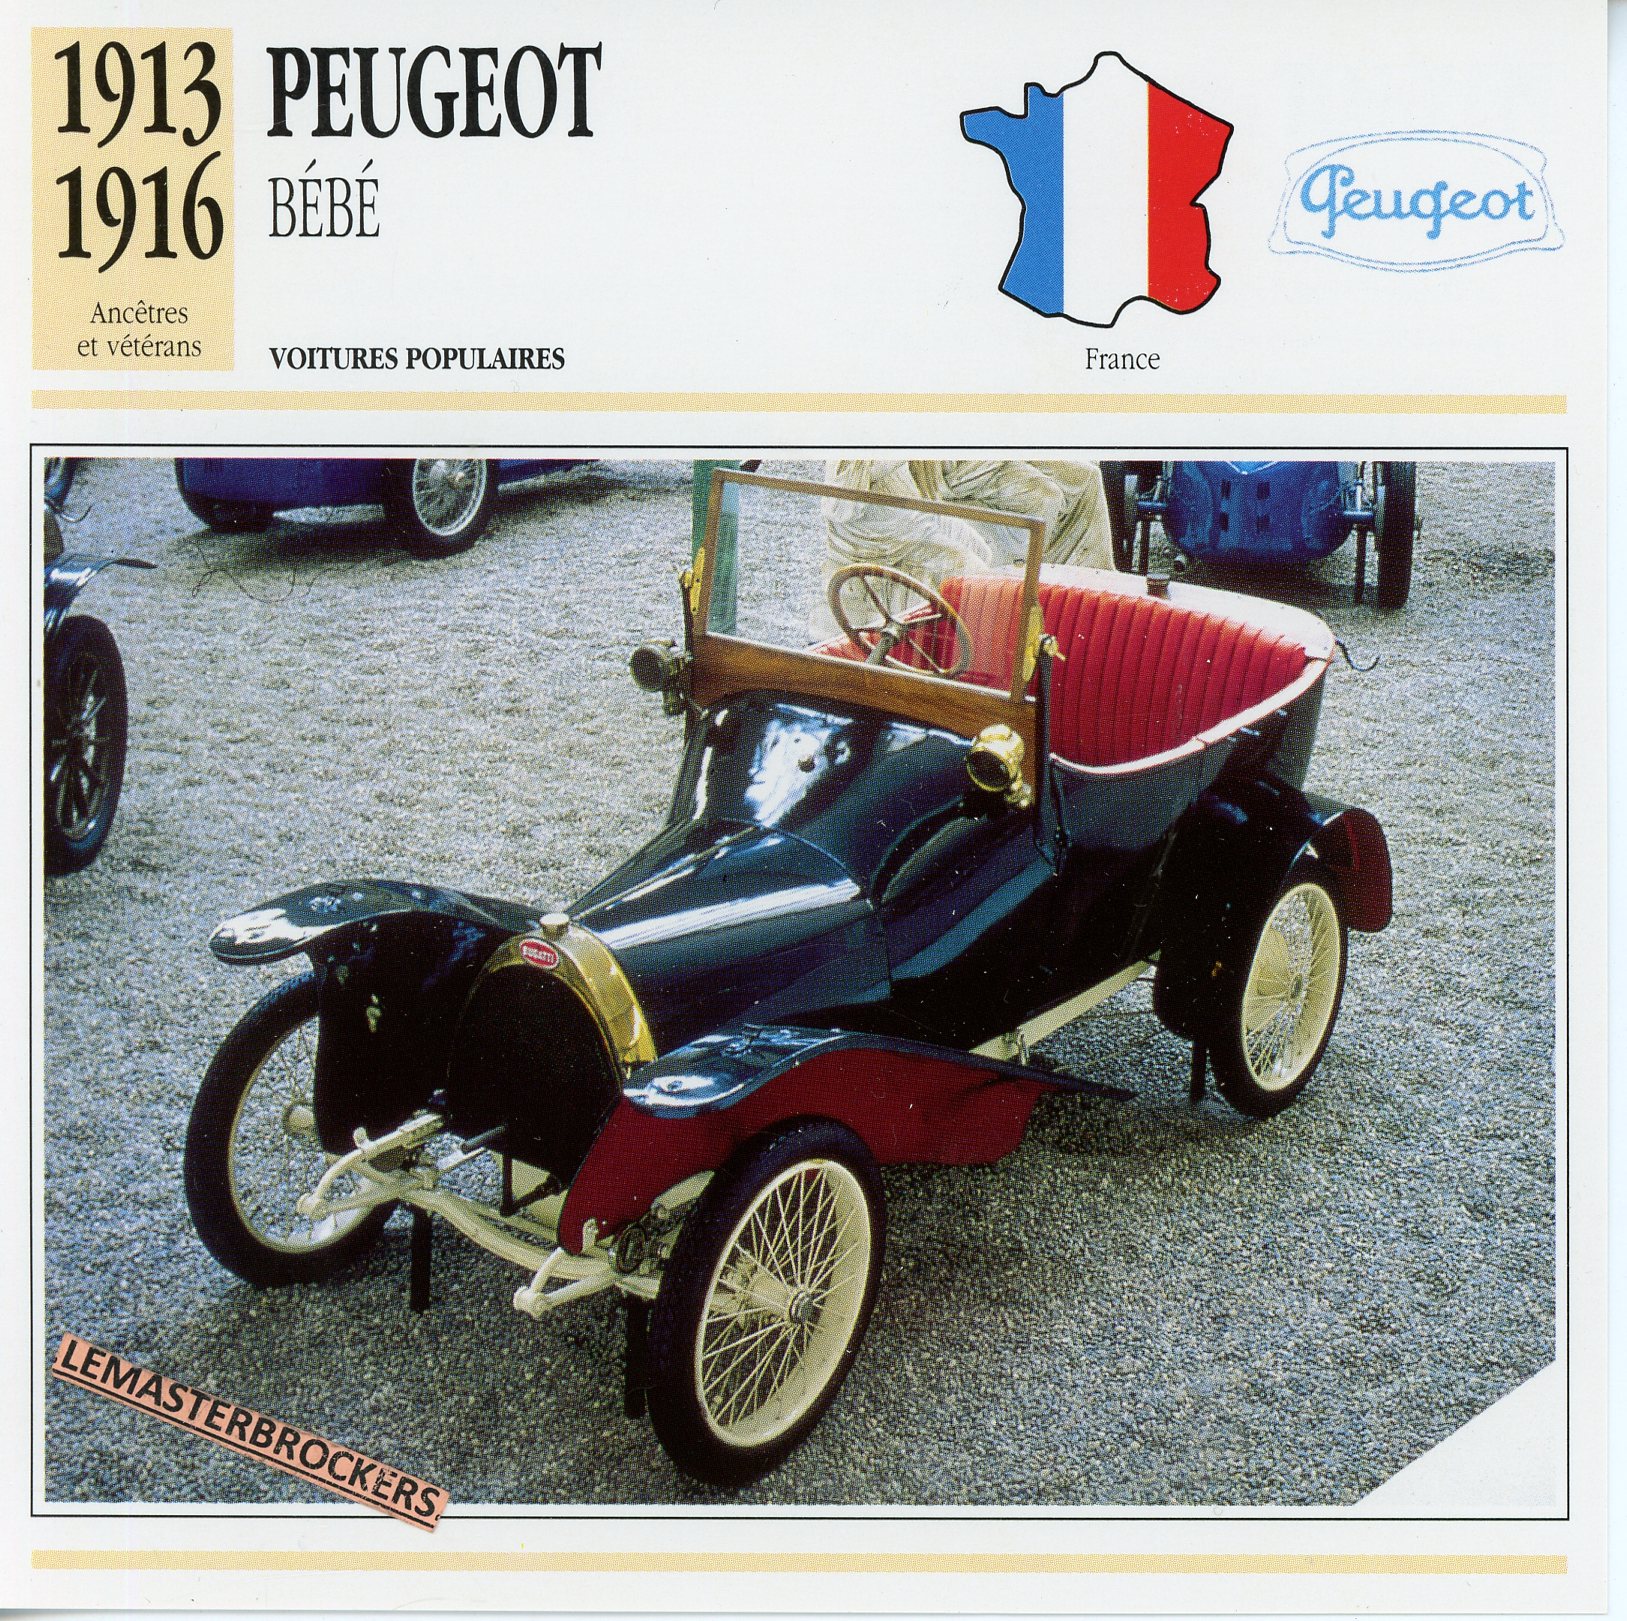 PEUGEOT-BÉBÉ-1913-1916-FICHE-AUTO-ATLAS-LEMASTERBROCKERS